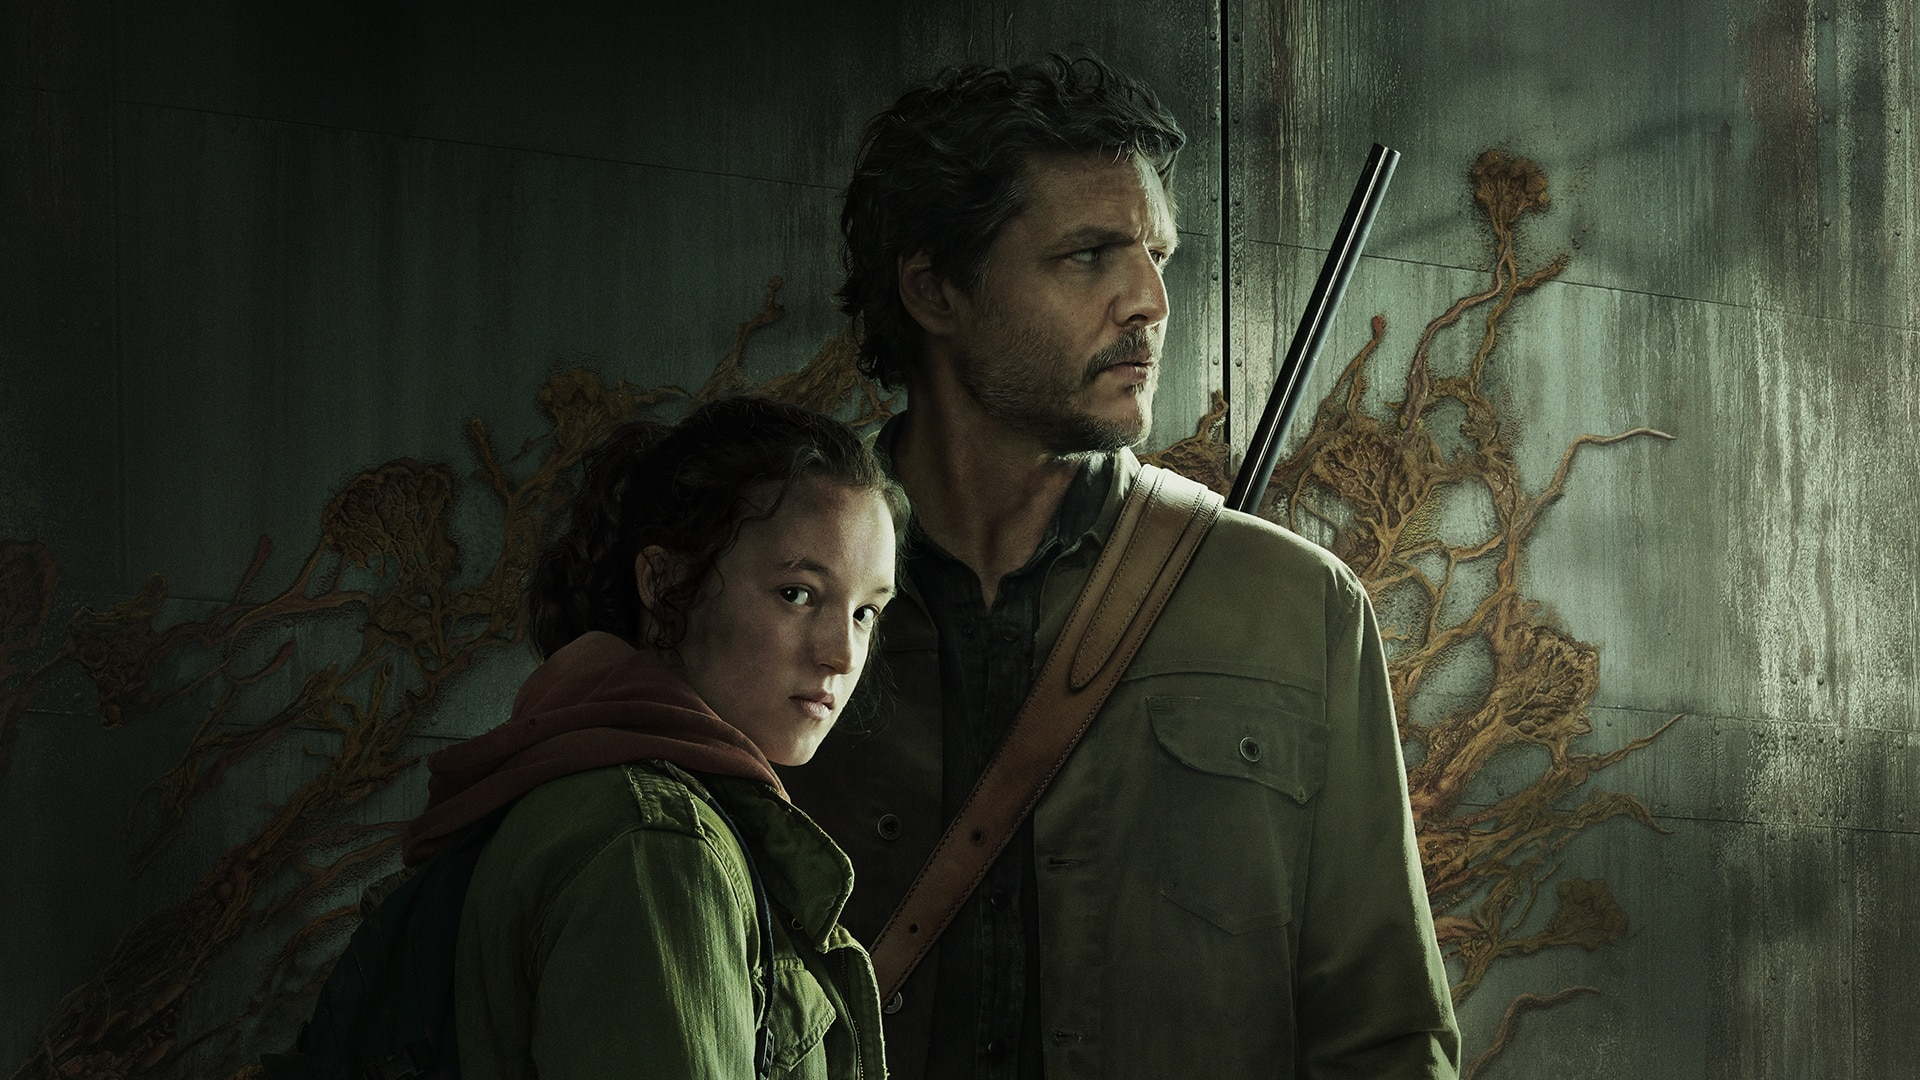 De infectie verspreidt zich: De maker van The Last of Us zegt dat seizoen 2 "klaar voor lancering" is en vol verrassingen zit 